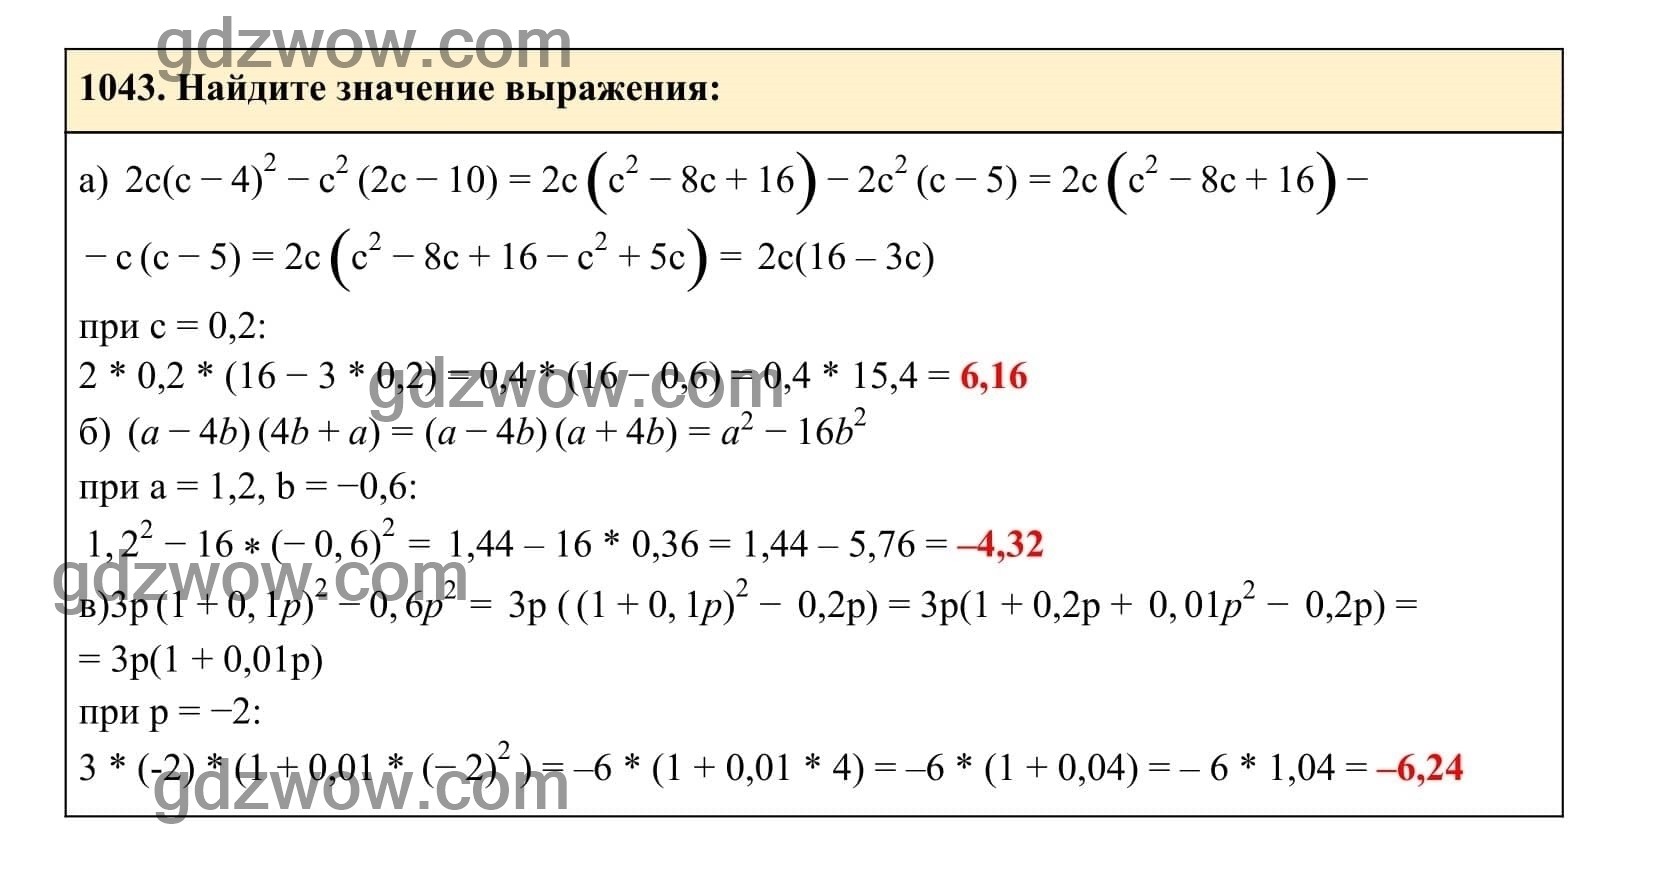 Упражнение 1043 - ГДЗ по Алгебре 7 класс Учебник Макарычев (решебник) - GDZwow